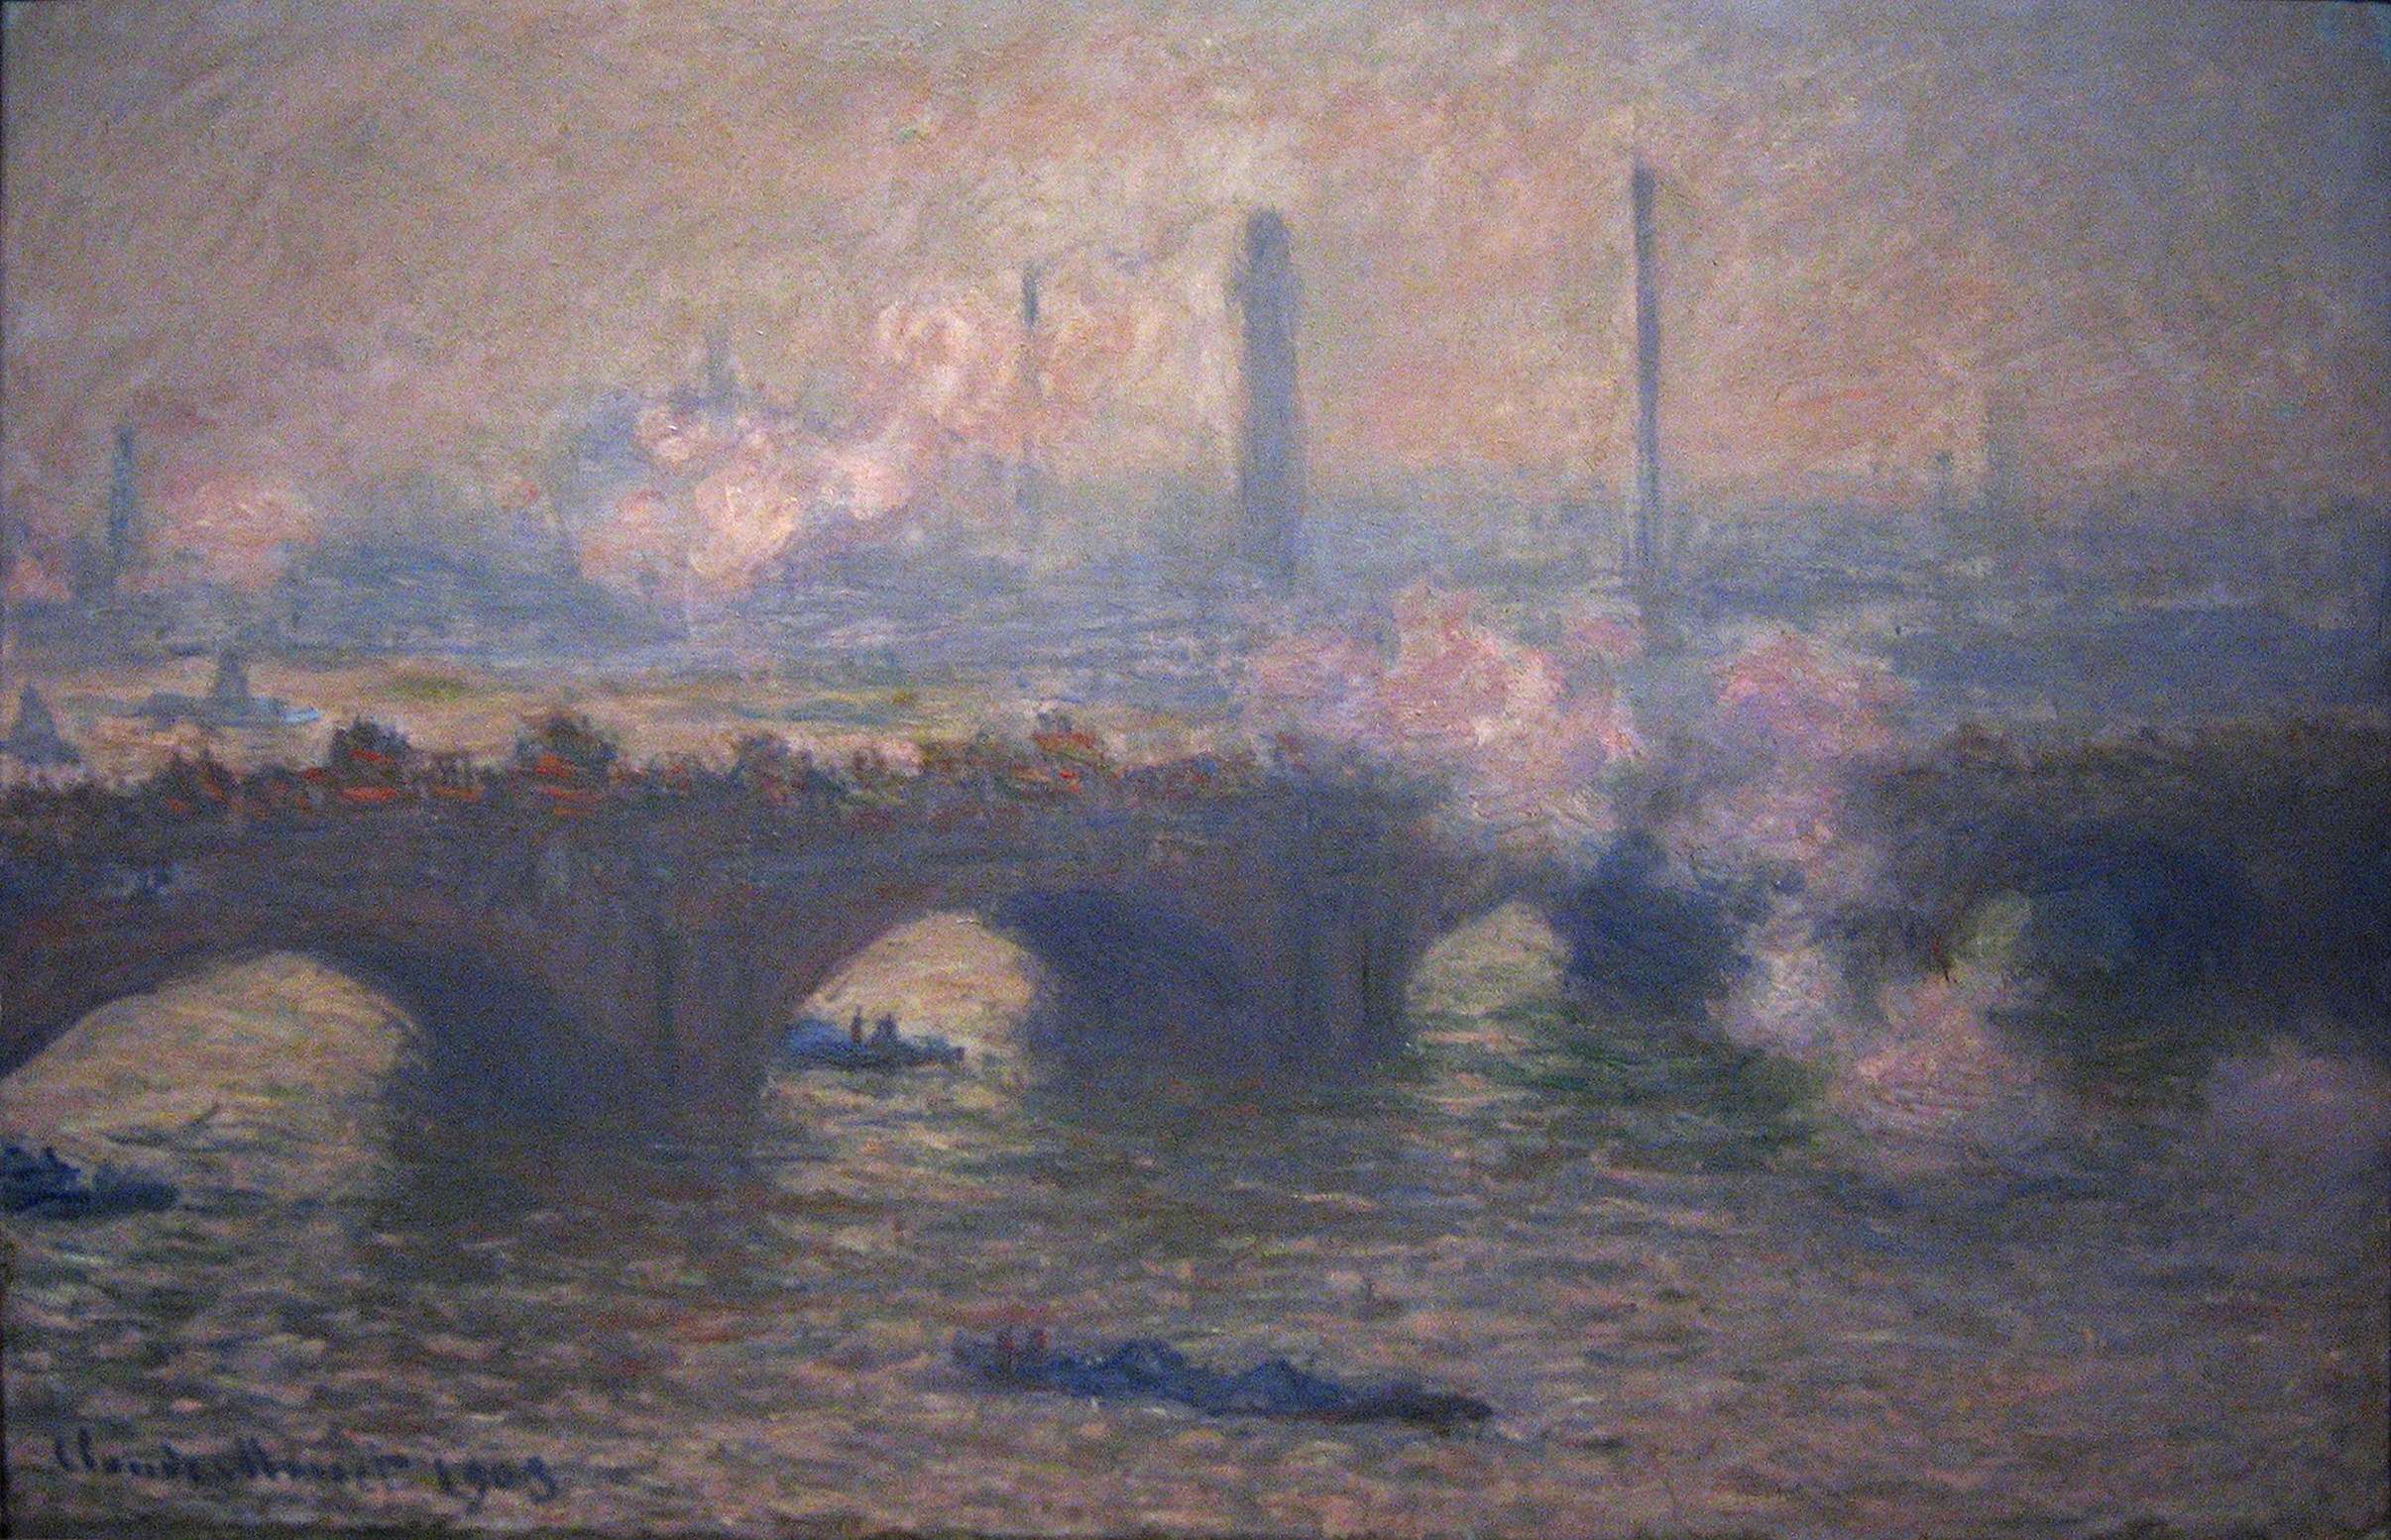 Κλοντ Μονέ. Η Γέφυρα του Βατερλώ, γκρίζα μέρα, 1903, Ουάσινγκτον, National Gallery of Art.